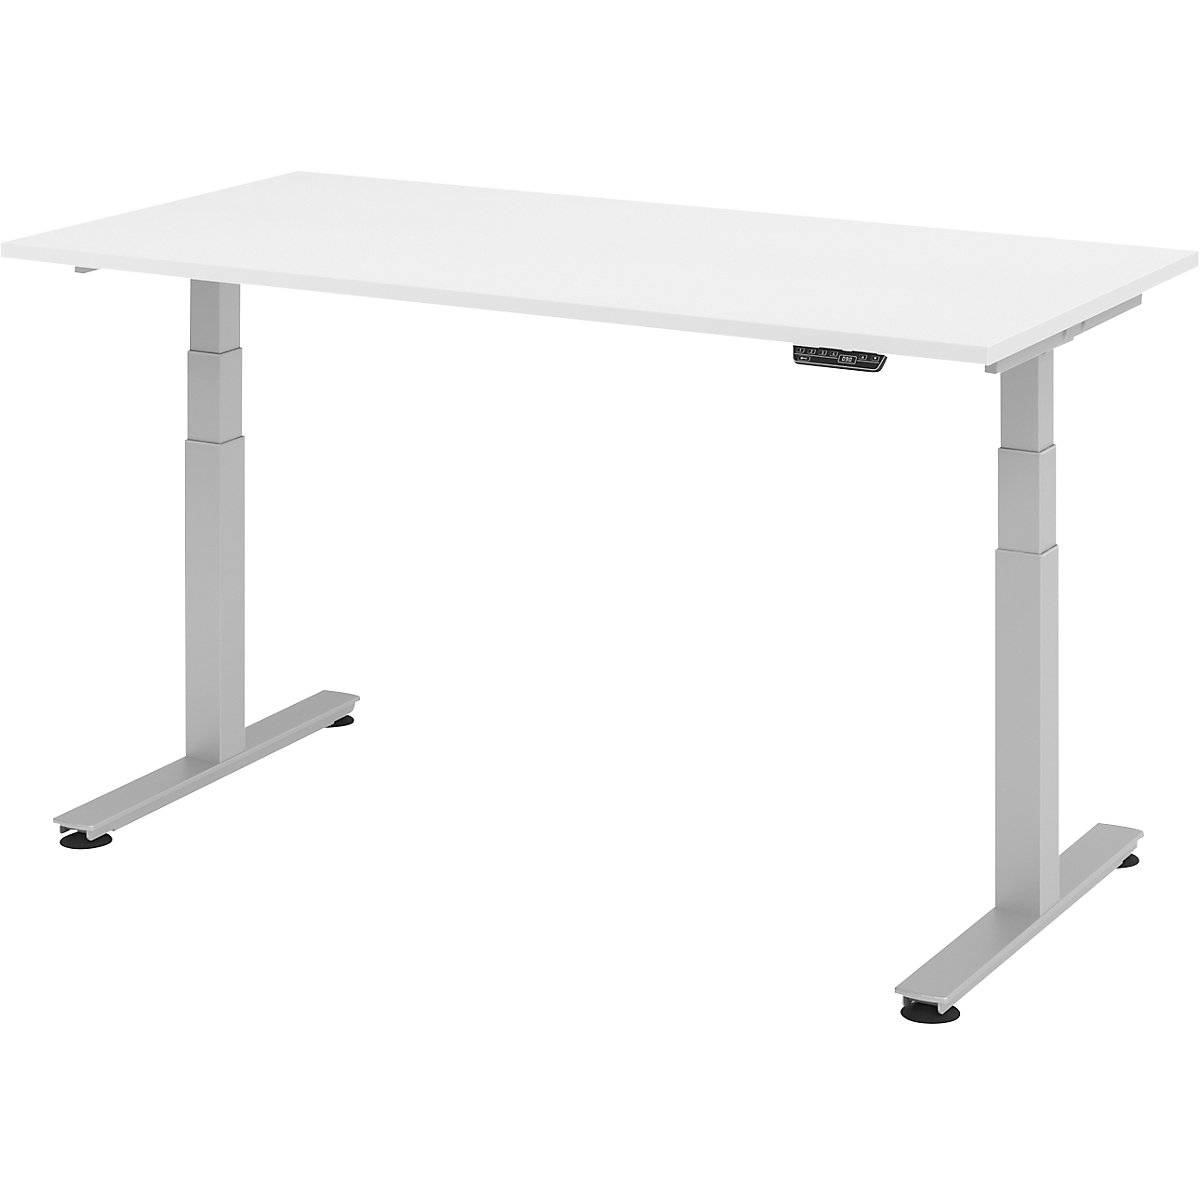 Psací stůl pro práci vestoje, s elektrickým přestavováním výšky UPLINER-2.0, podstavec s nohami ve tvaru T, šířka 1200 mm, bílá-10